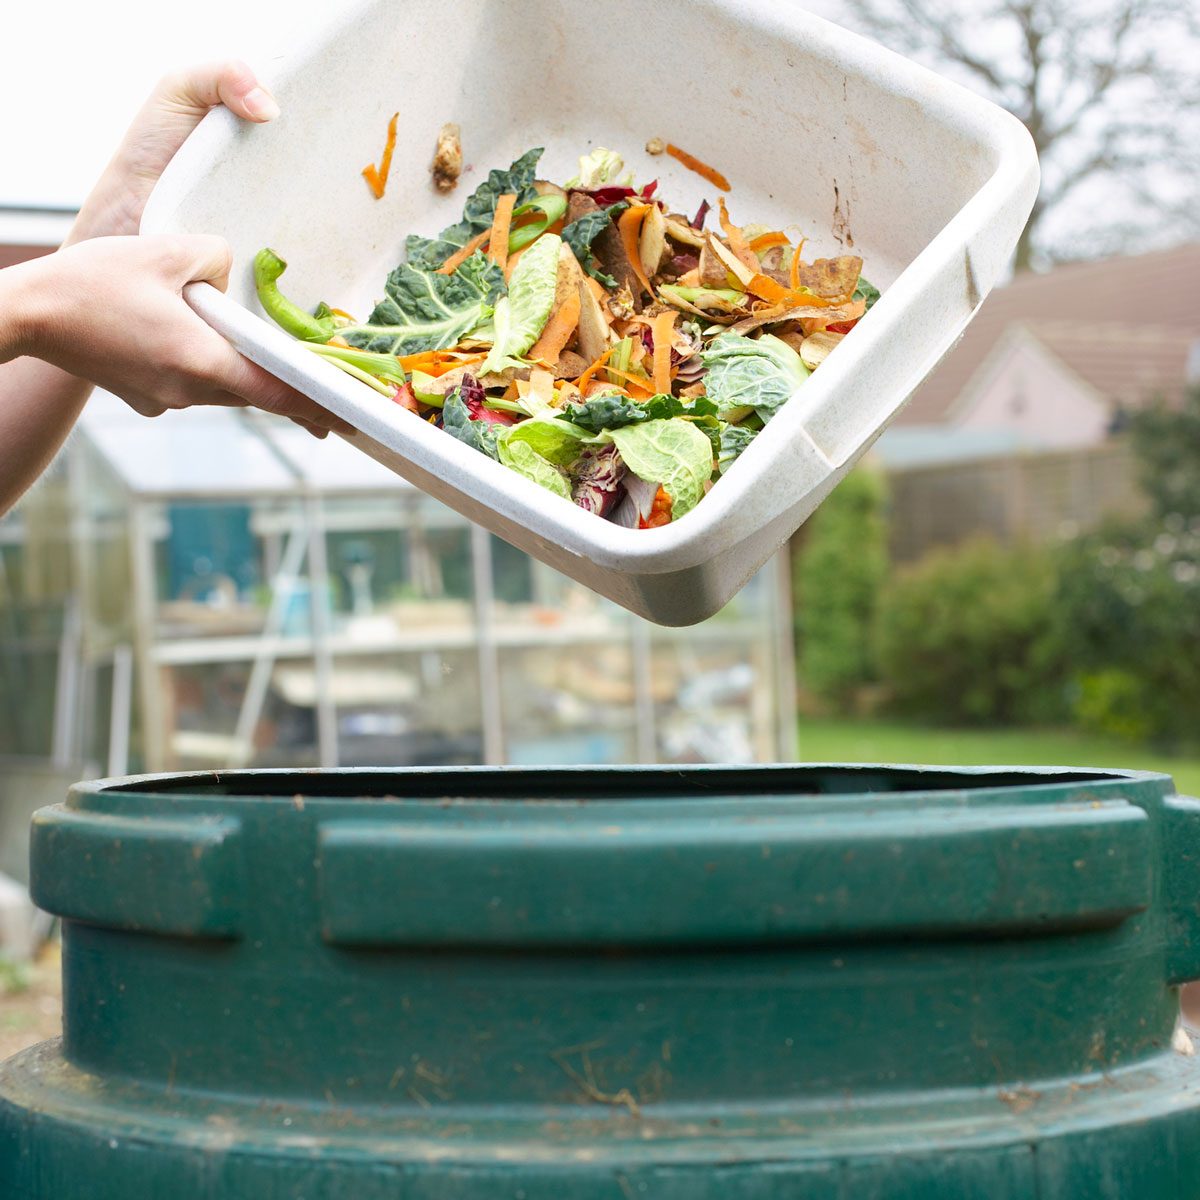 7 Best Compost Bins